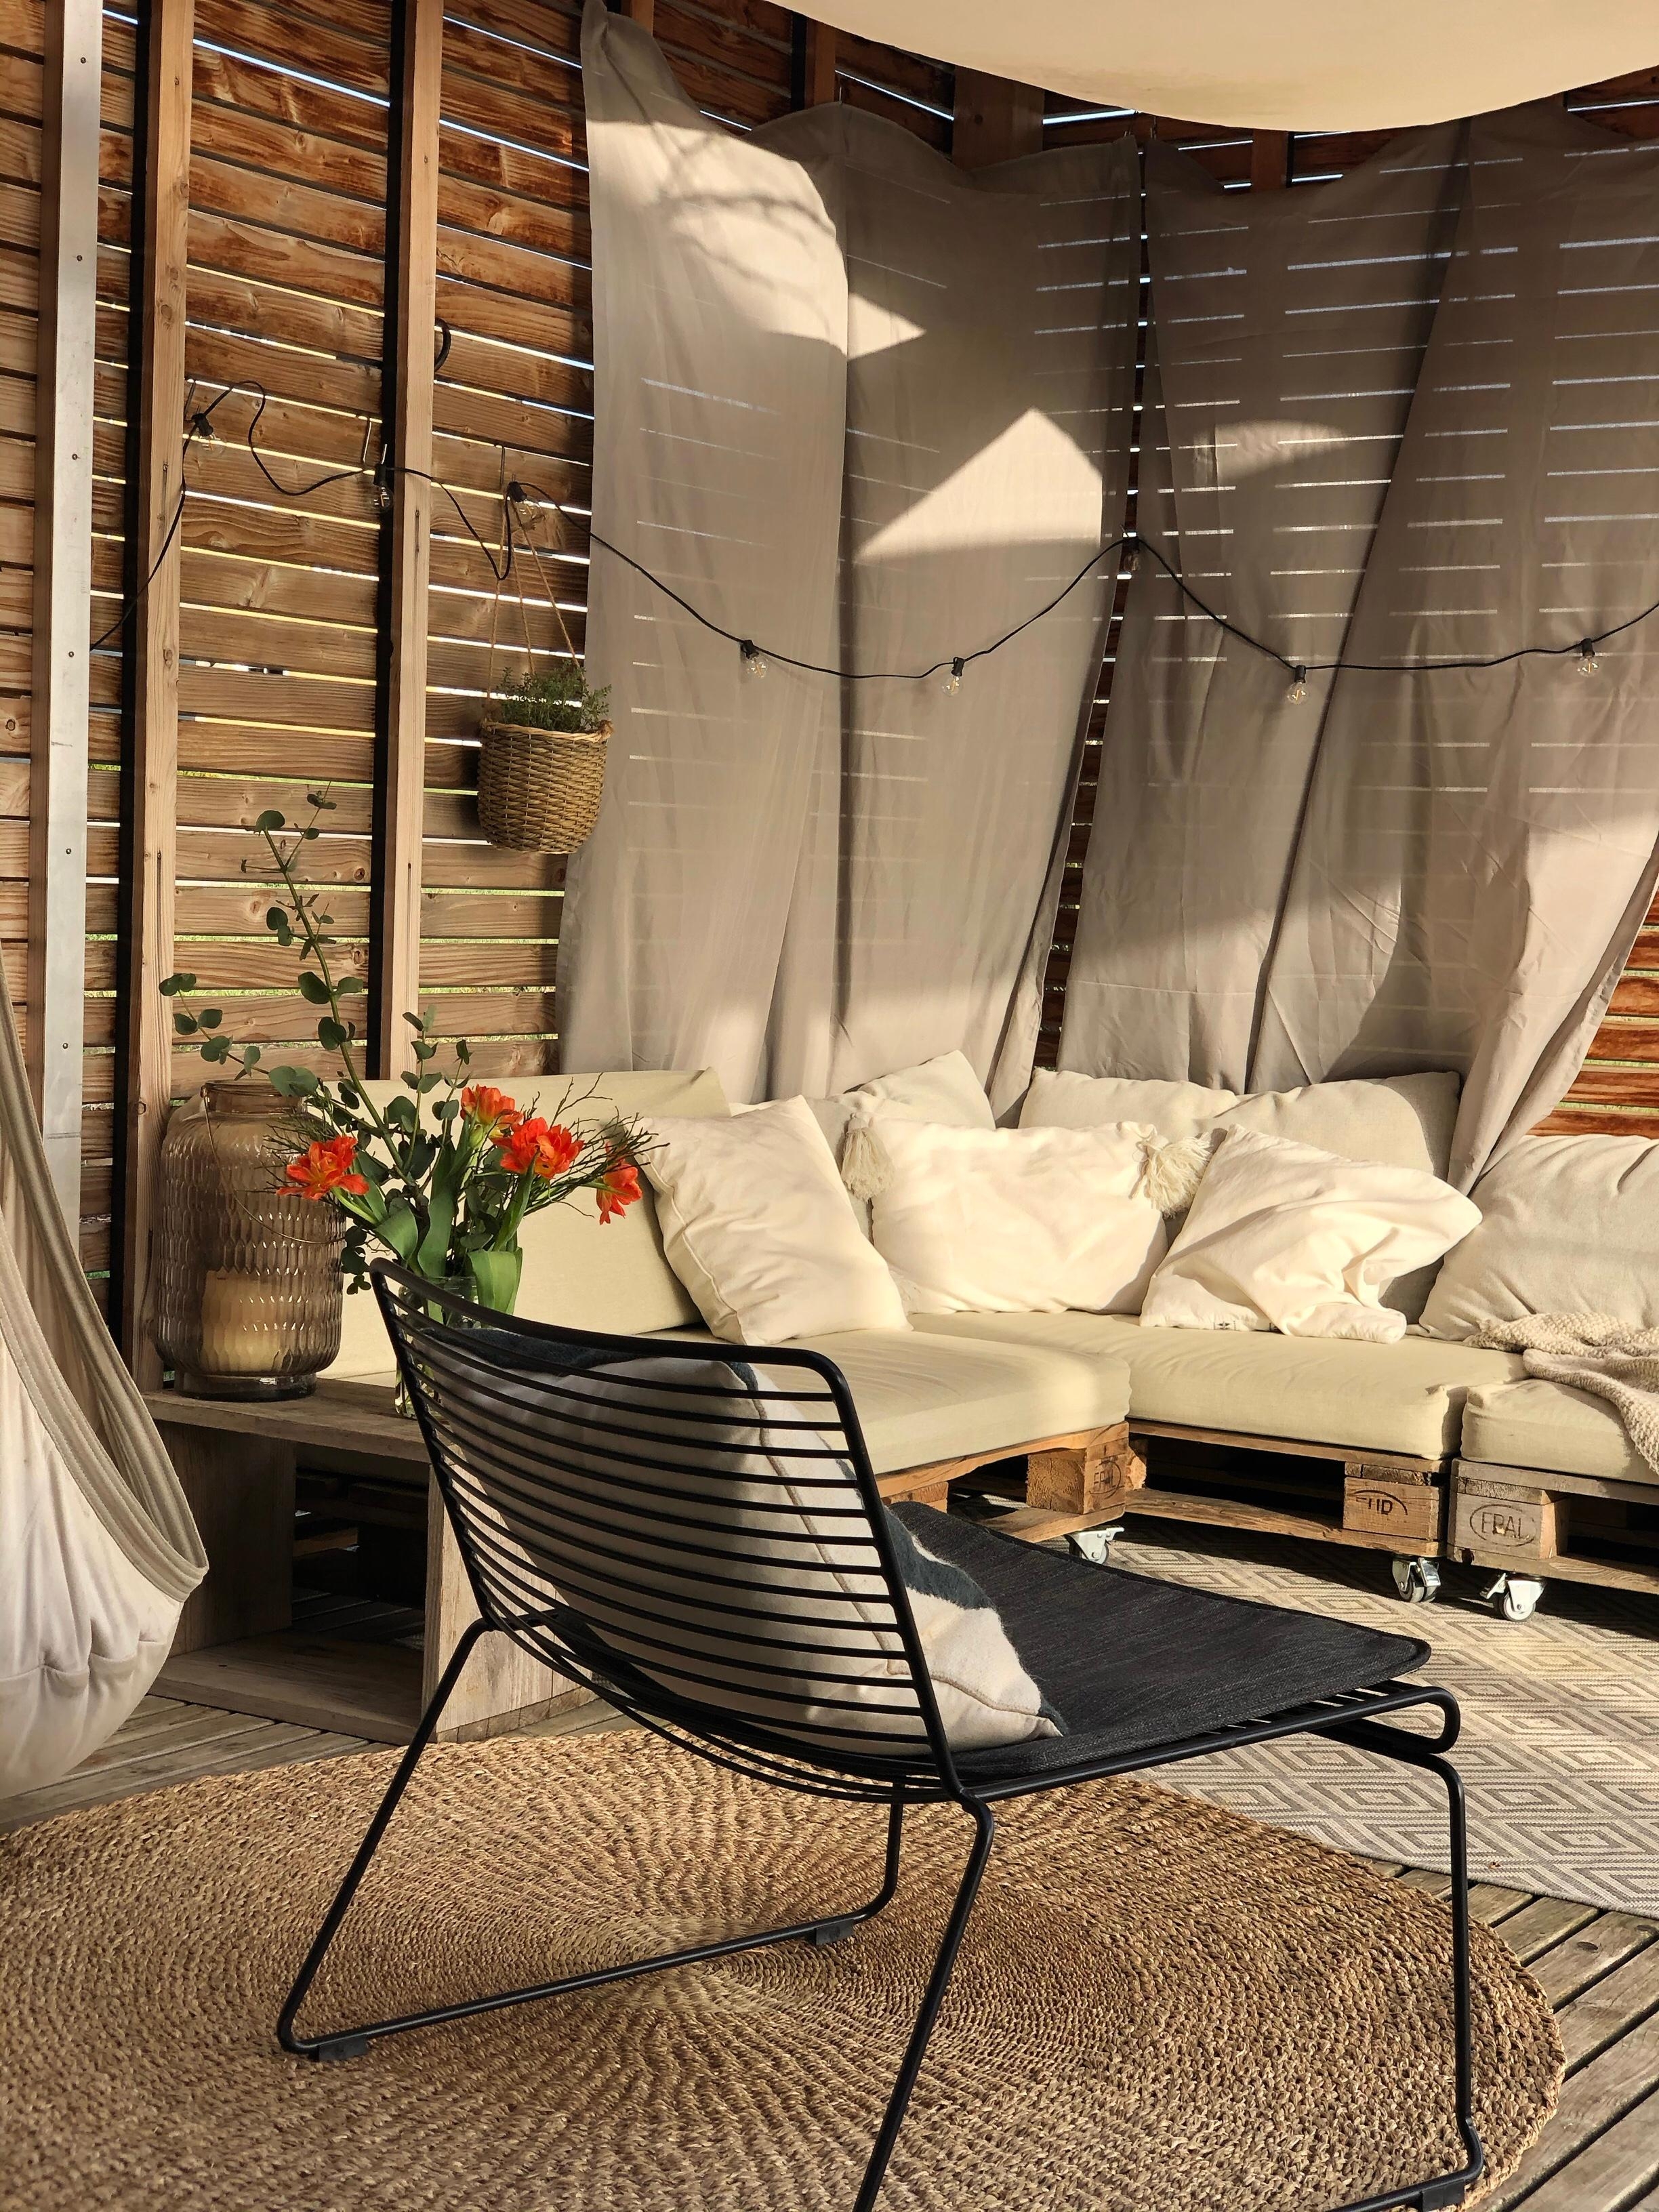 #outdoorsofa #outdoorbereich #terrasse #balkon frühlingvibes ziehen ein ❤️🧡